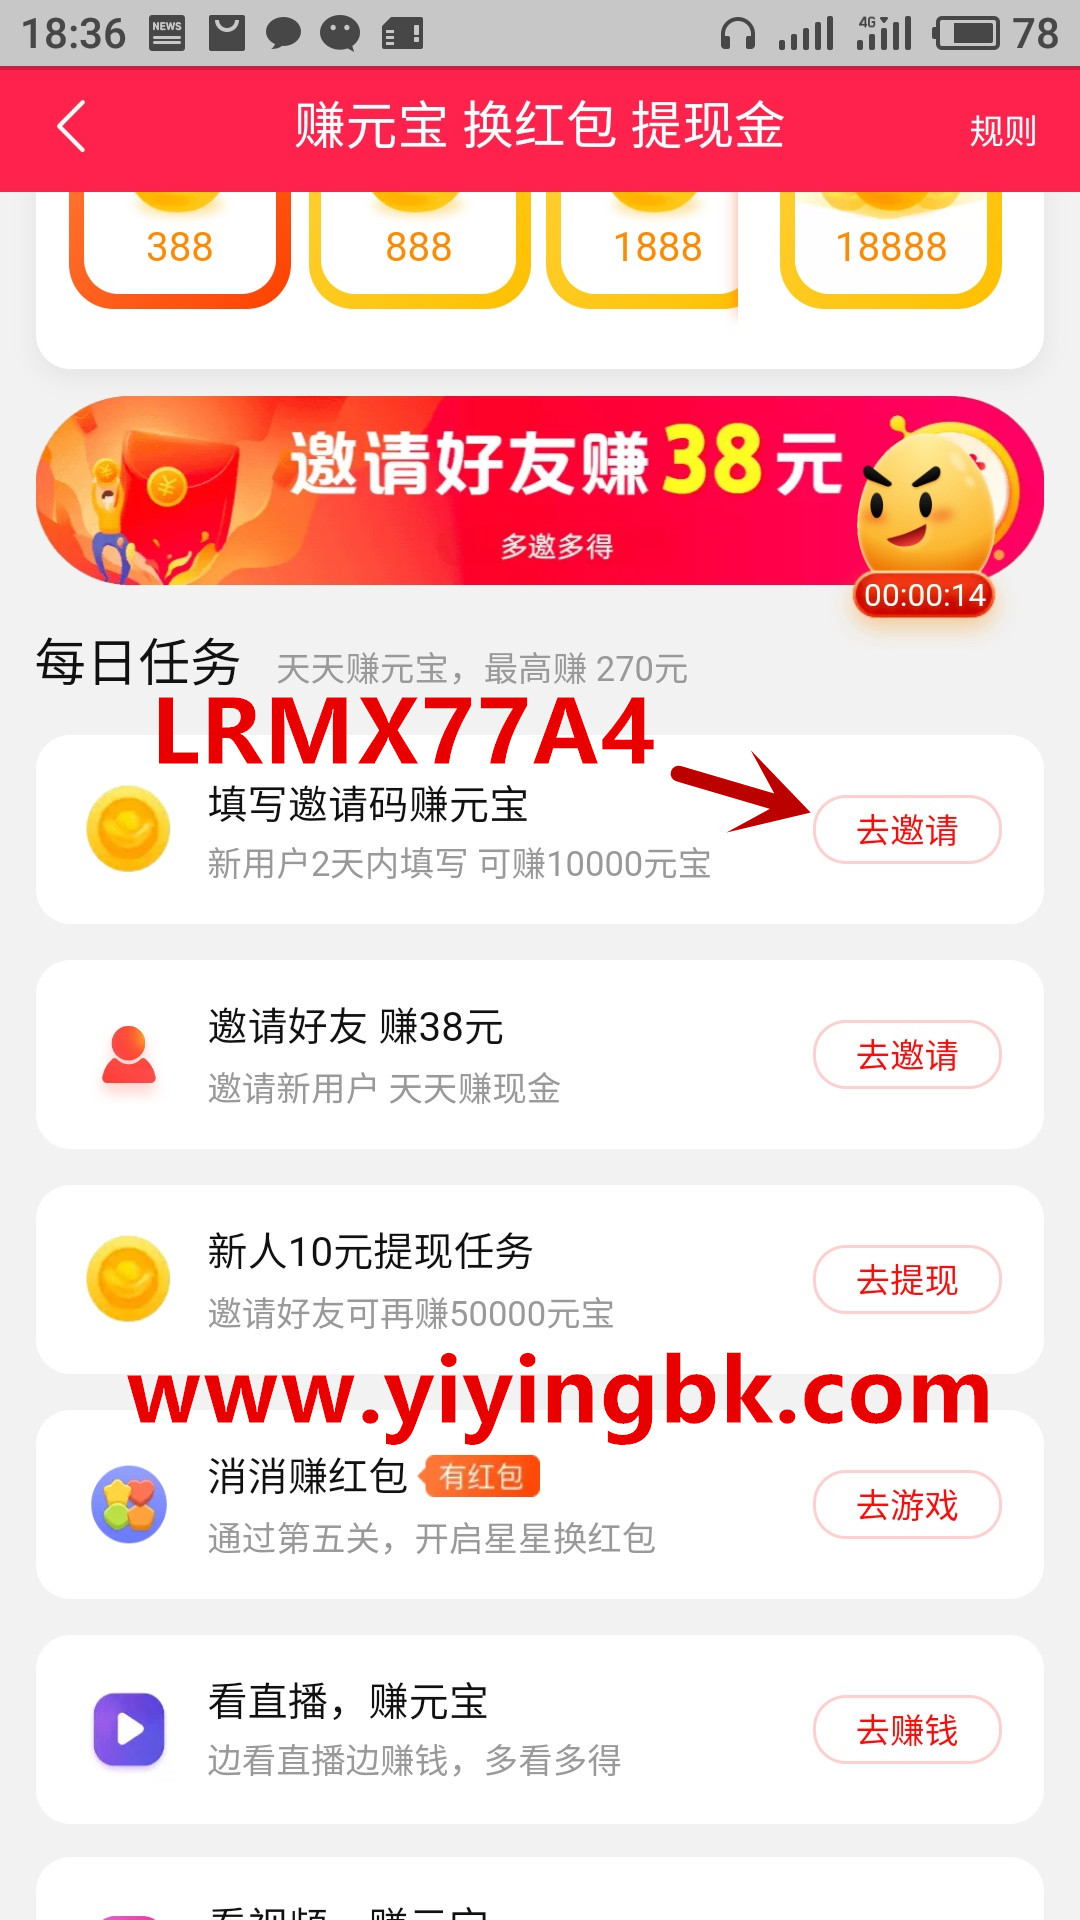 淘宝直播填写邀请码LRMX77A4免费领取1元红包，www.yiyingbk.com